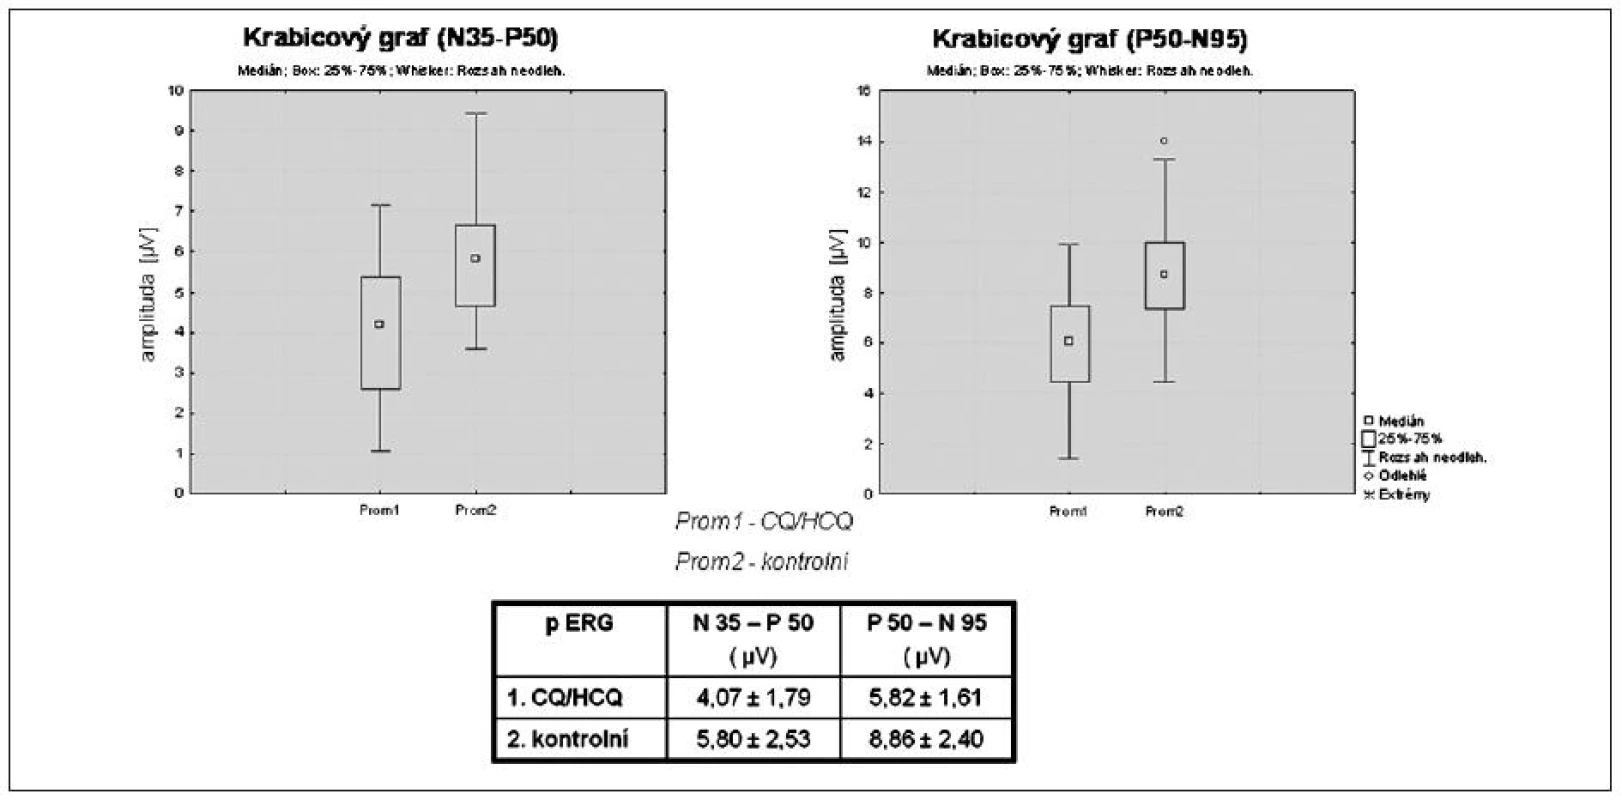 Srovnání amplitud vln N35 - P50 a P50 - N95 u P ERG mezi souborem pacientů léčených CQ/HCQ a kontrolním souborem pacientů